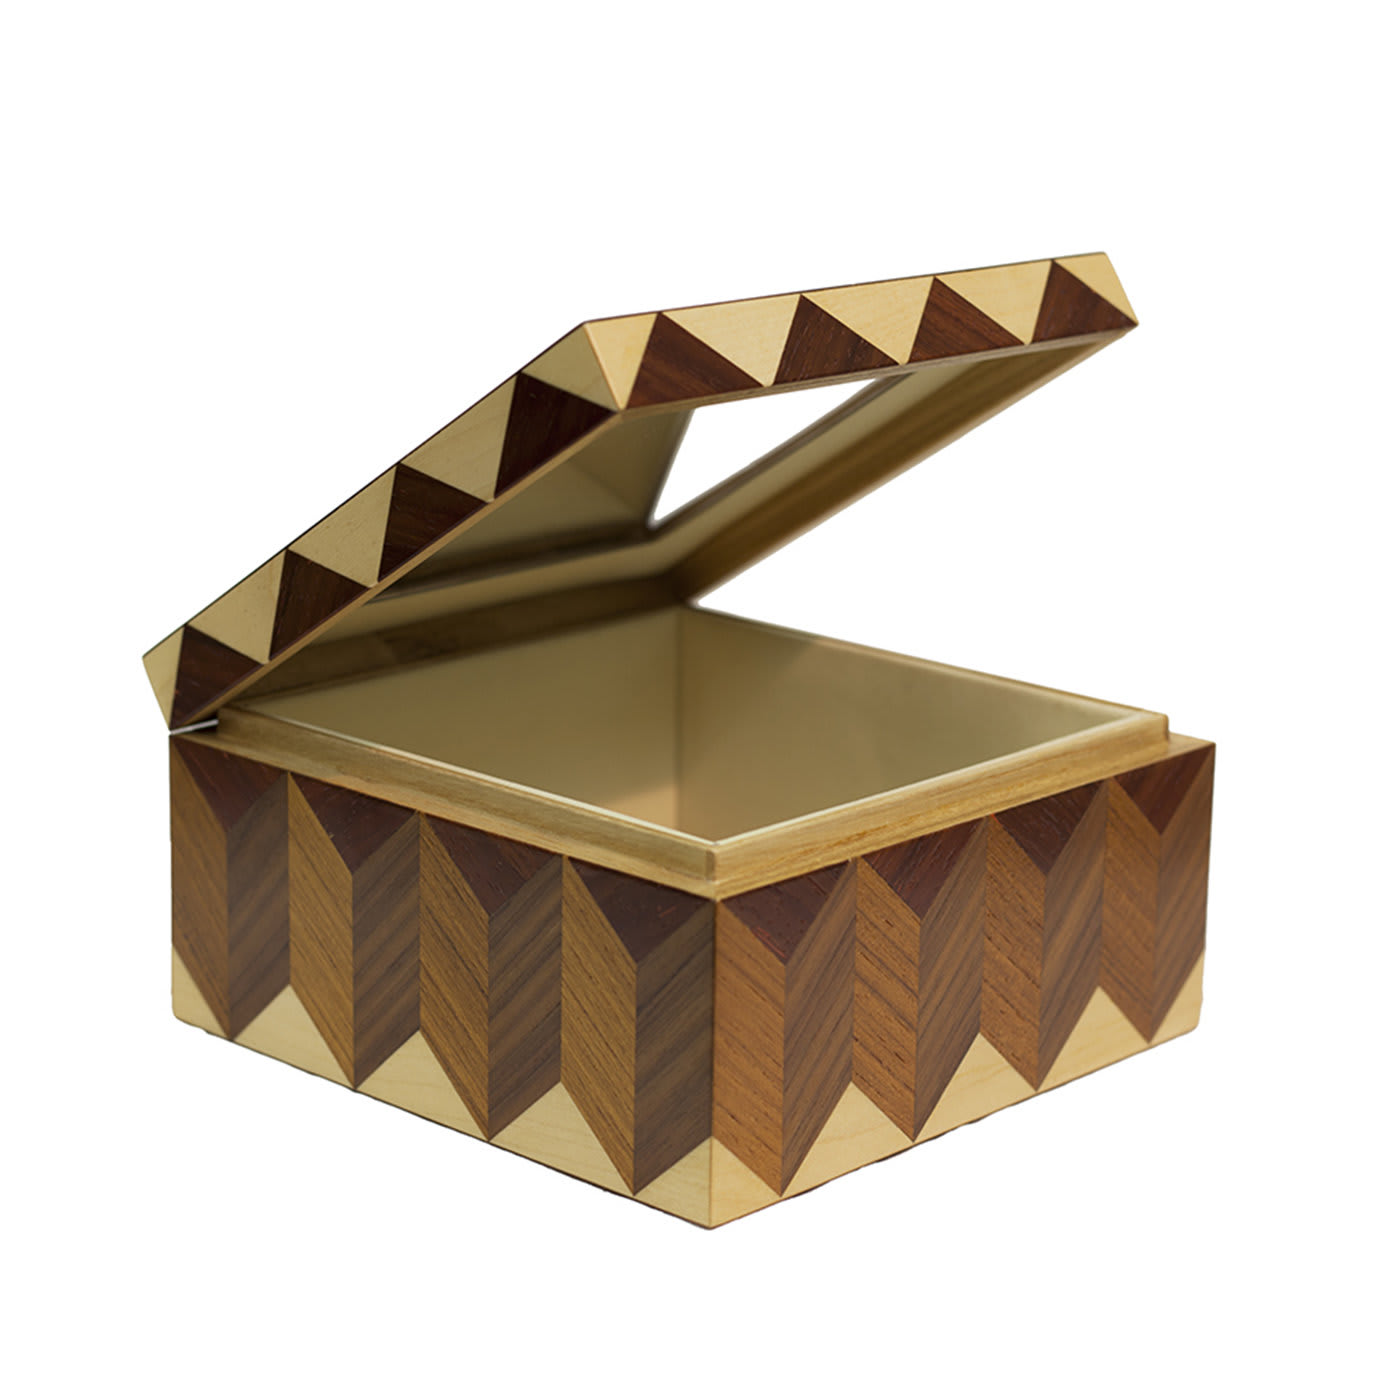 Inlaid 3D Box - Giovanni Morelli